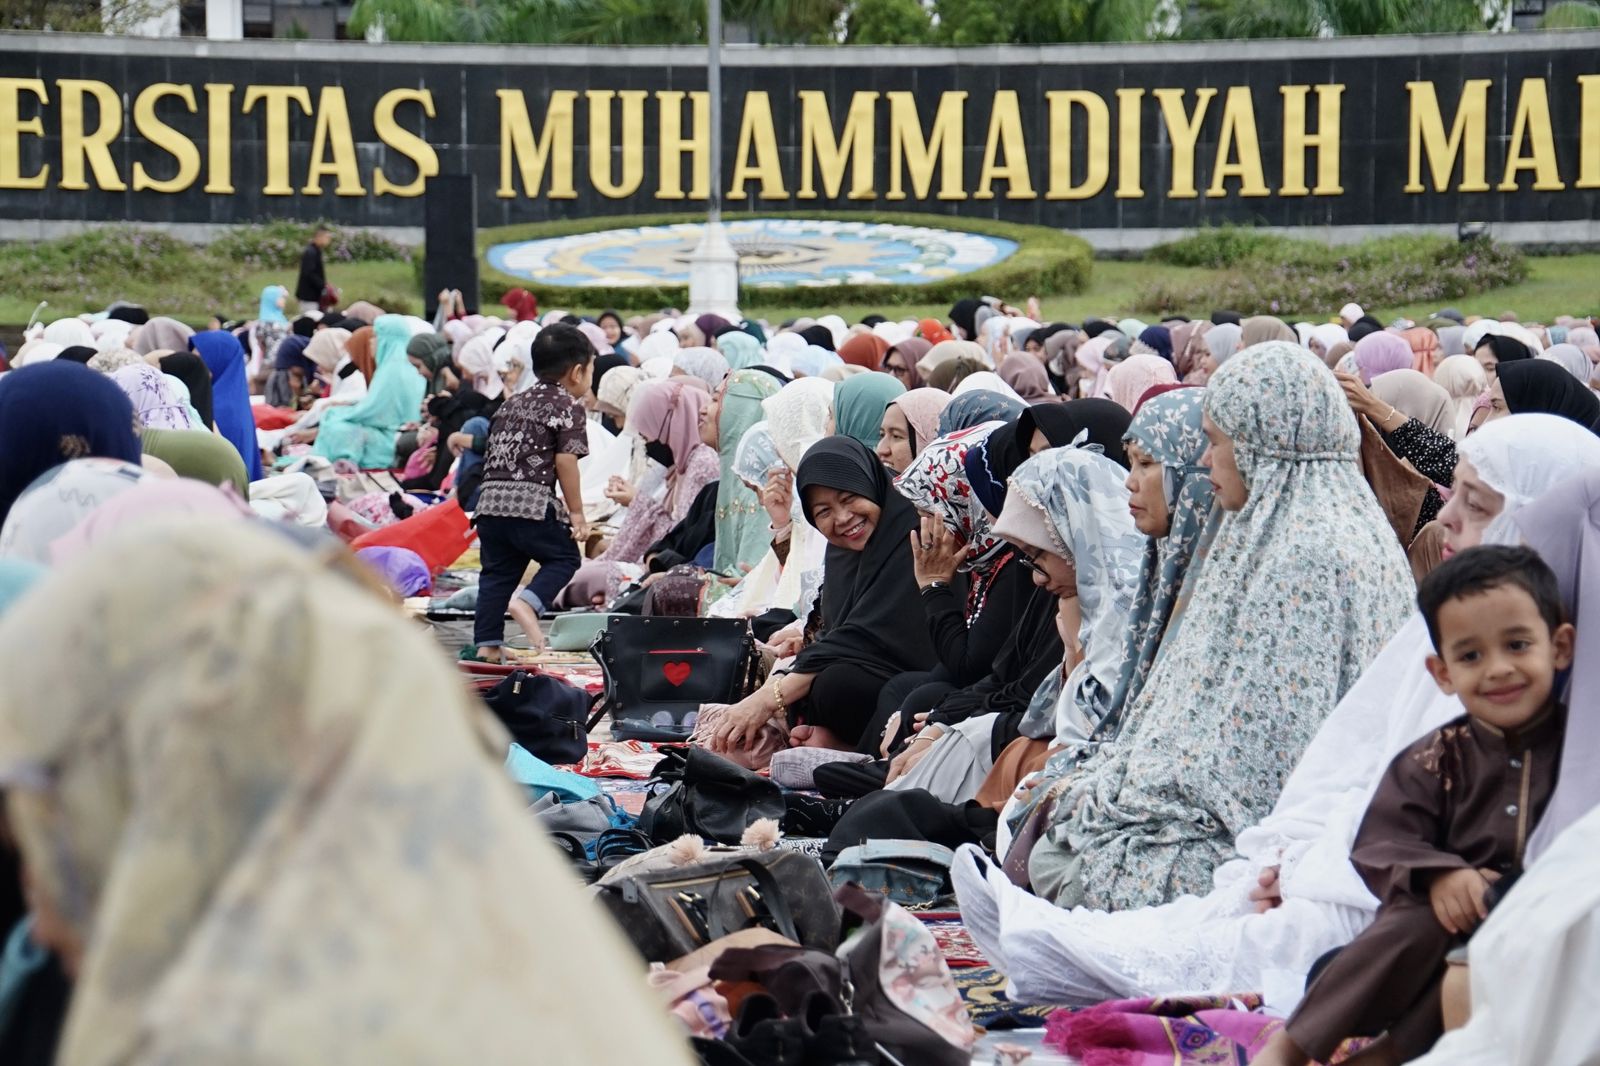 Ribuan Jemaah Salat Iduladha di UMM, Teladani Nilai Keimanan Nabi Ibrahim dan Ismail